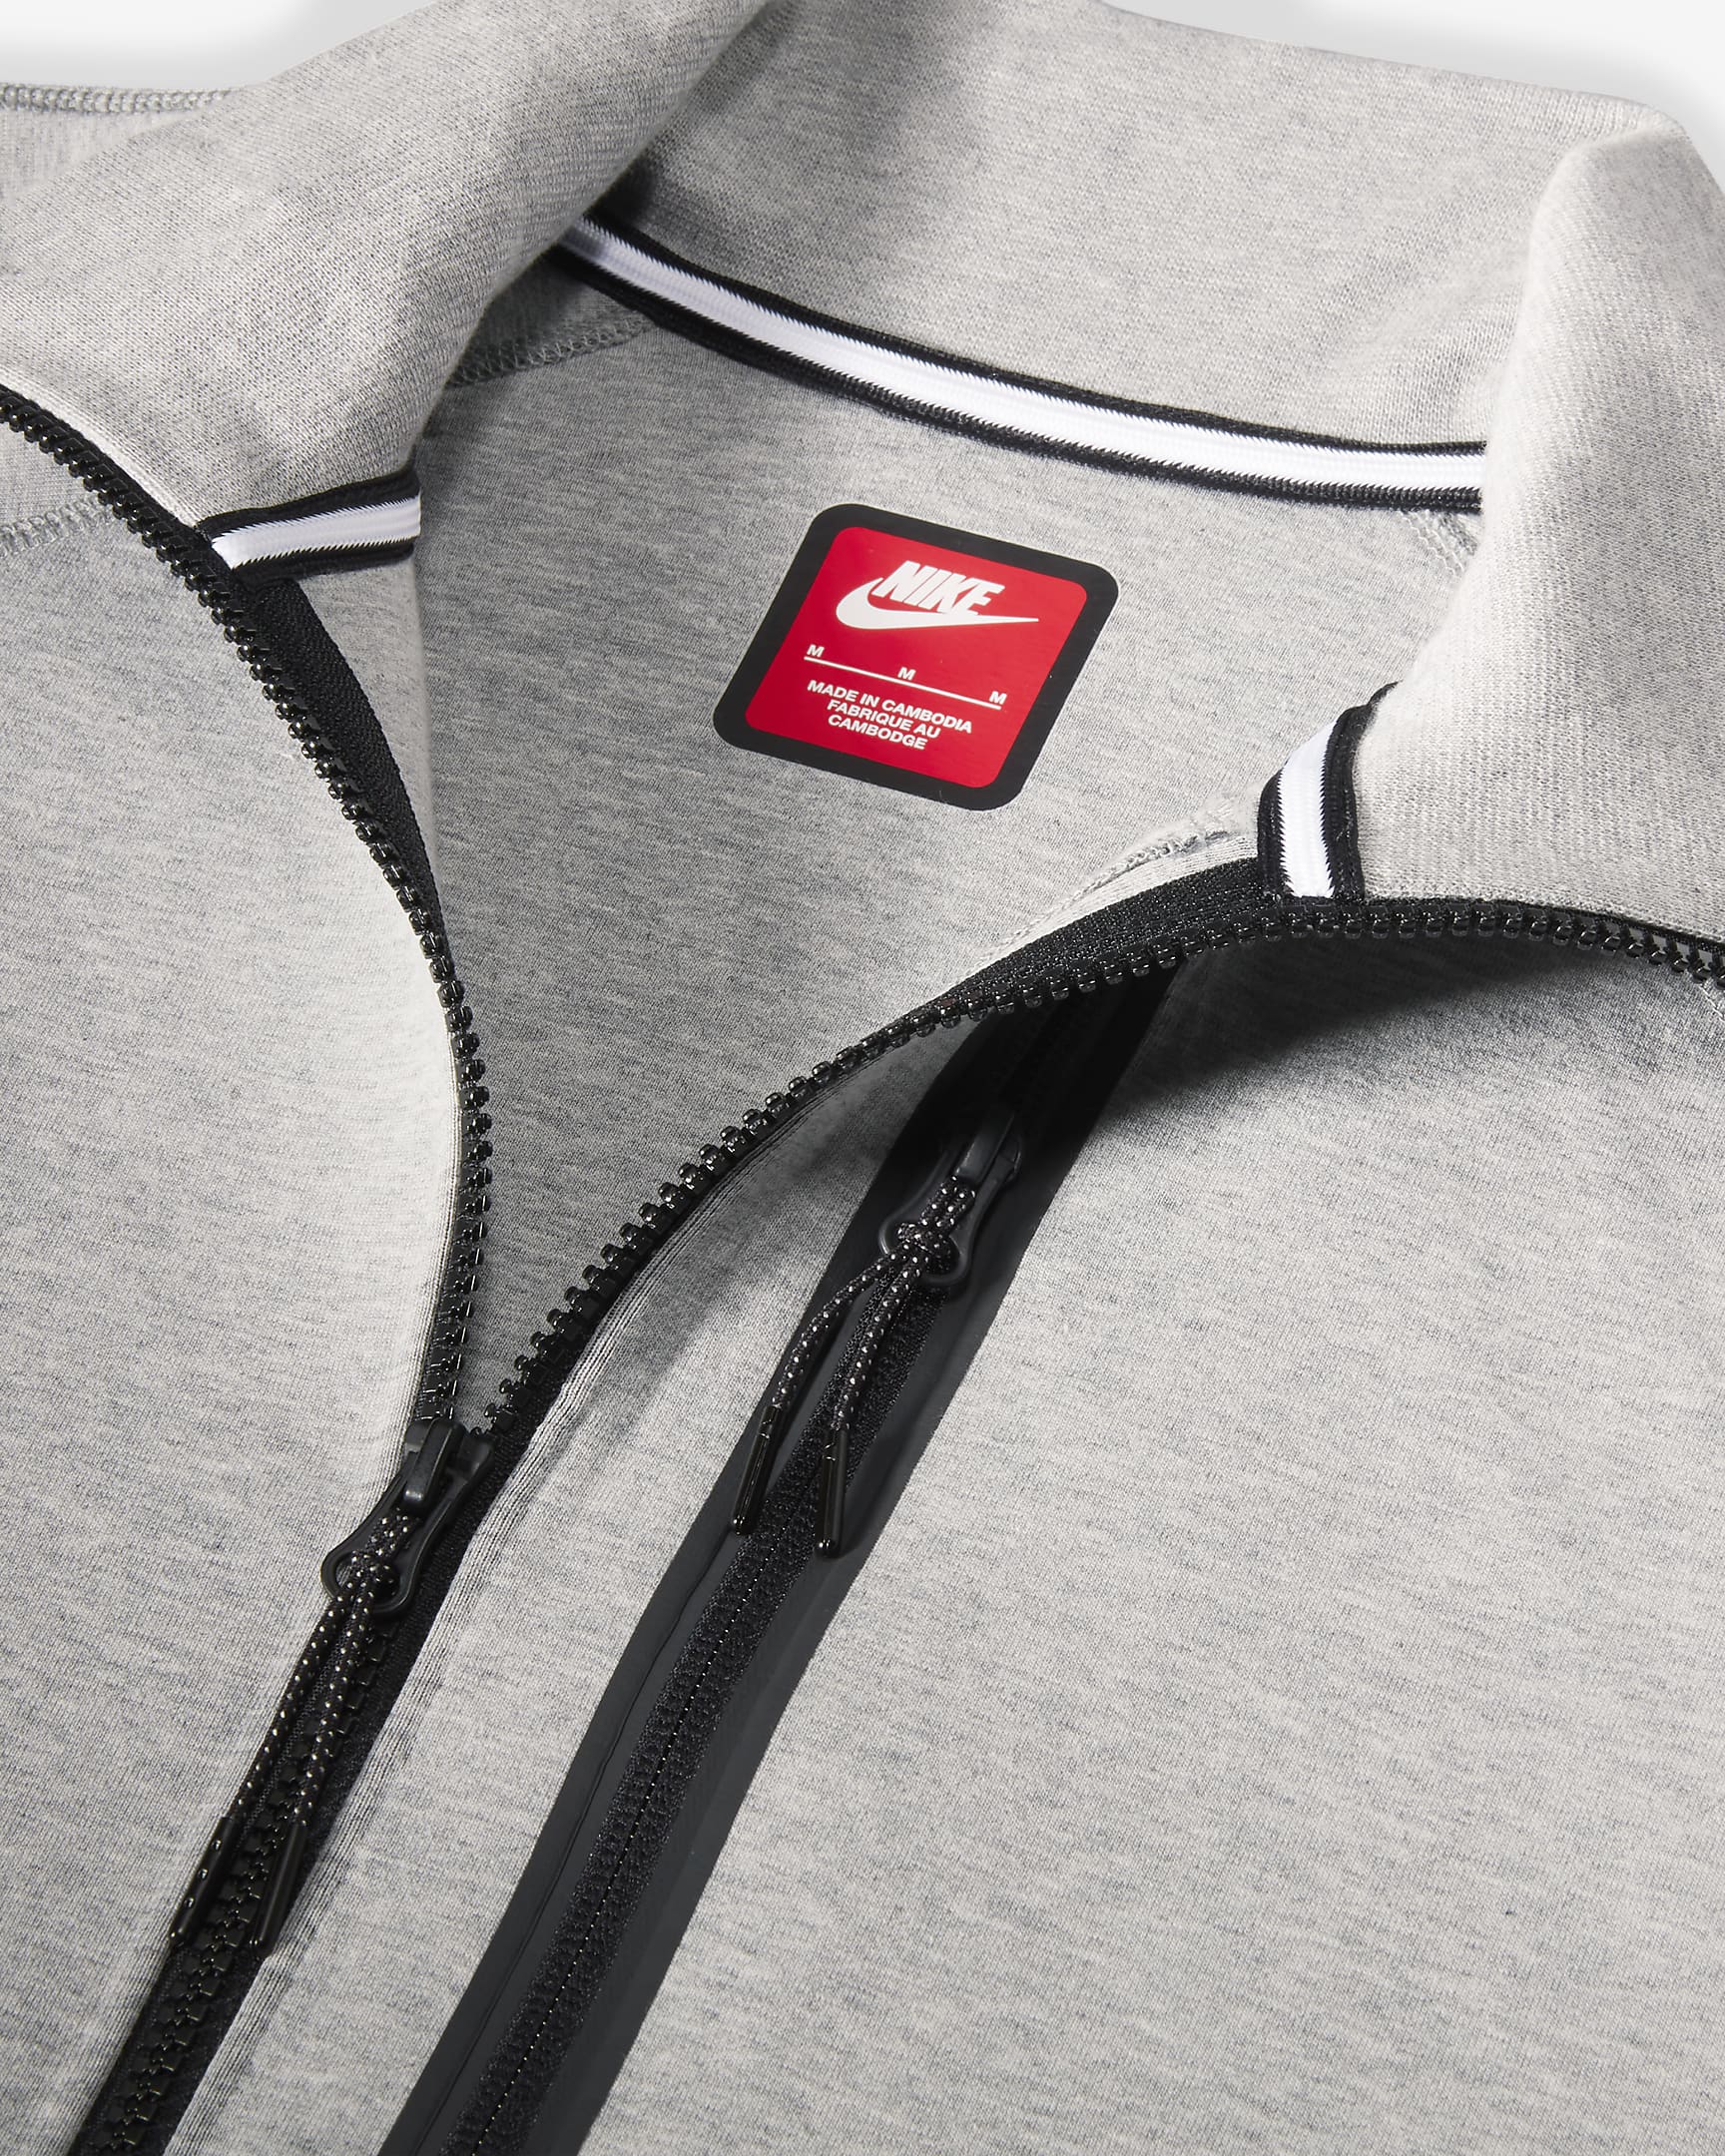 Nike Sportswear Tech Fleece OG Men's Slim-Fit Jacket. Nike ID